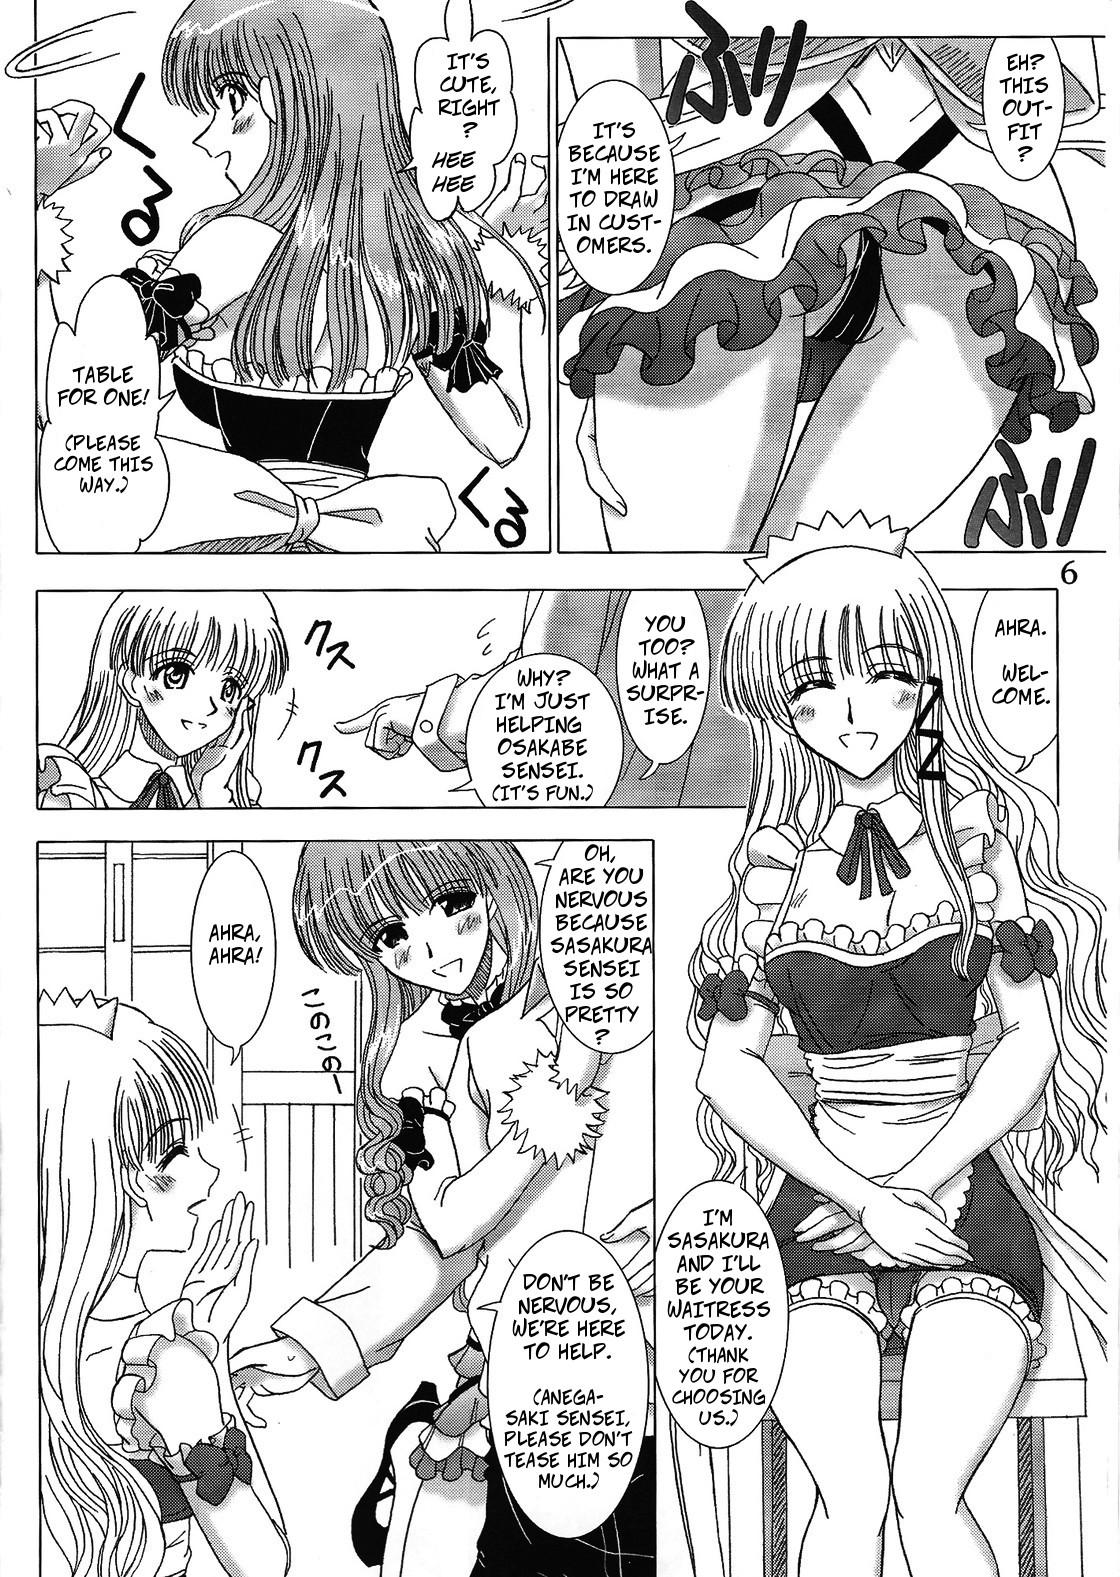 Safado Cafe Tea Ceremony Club - School rumble Super Hot Porn - Page 5